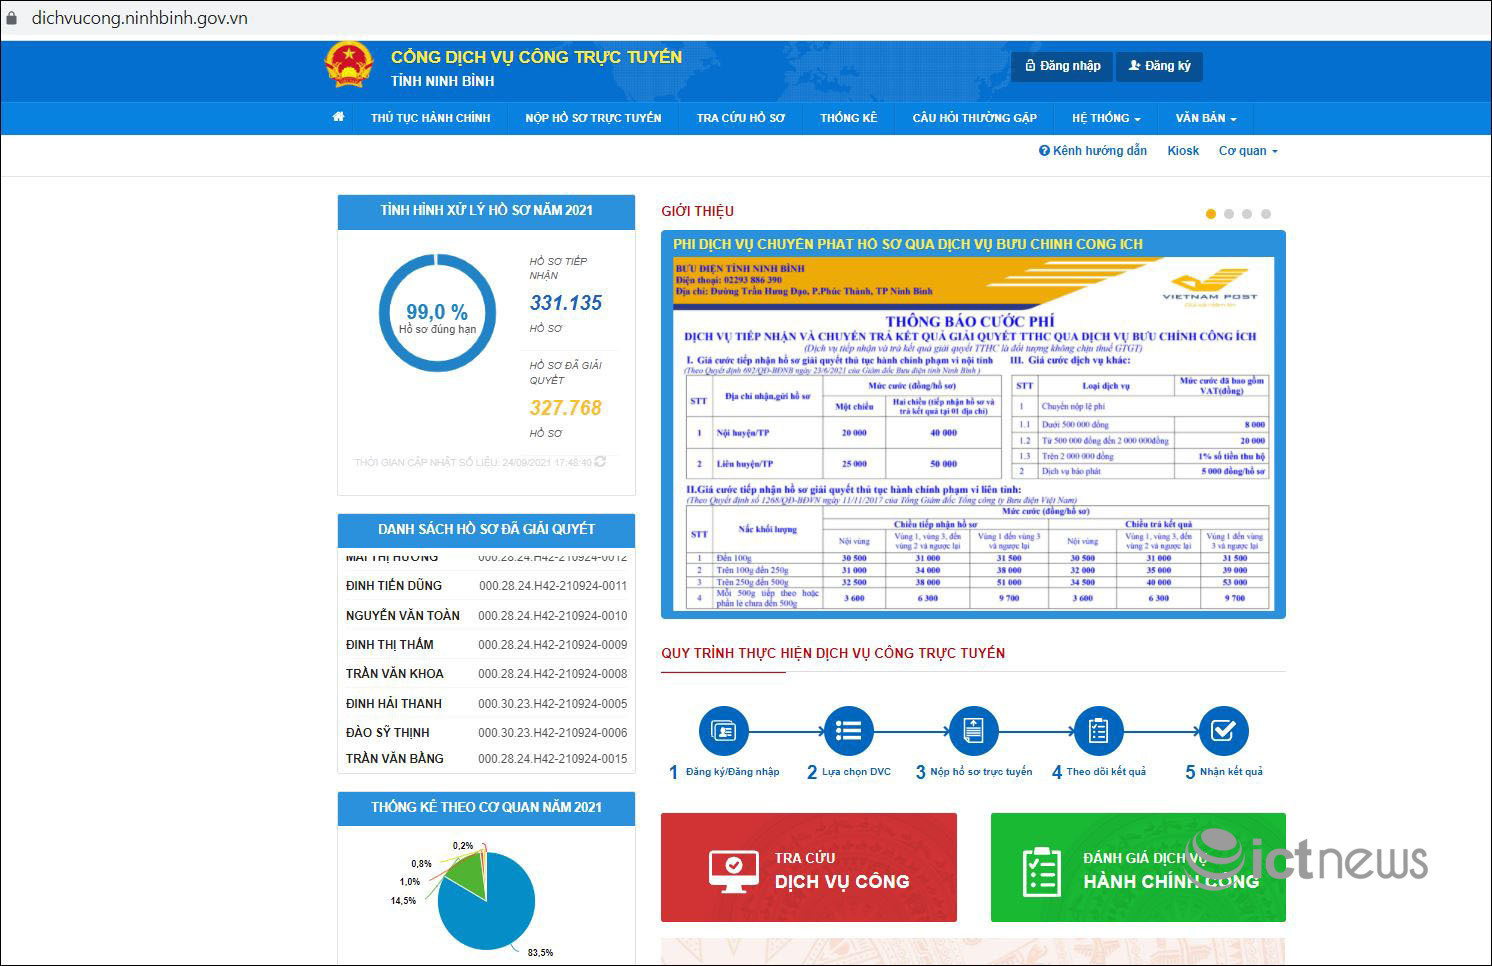 Toàn bộ 1.226 dịch vụ công đủ điều kiện được Ninh Bình cung cấp trực tuyến mức 4